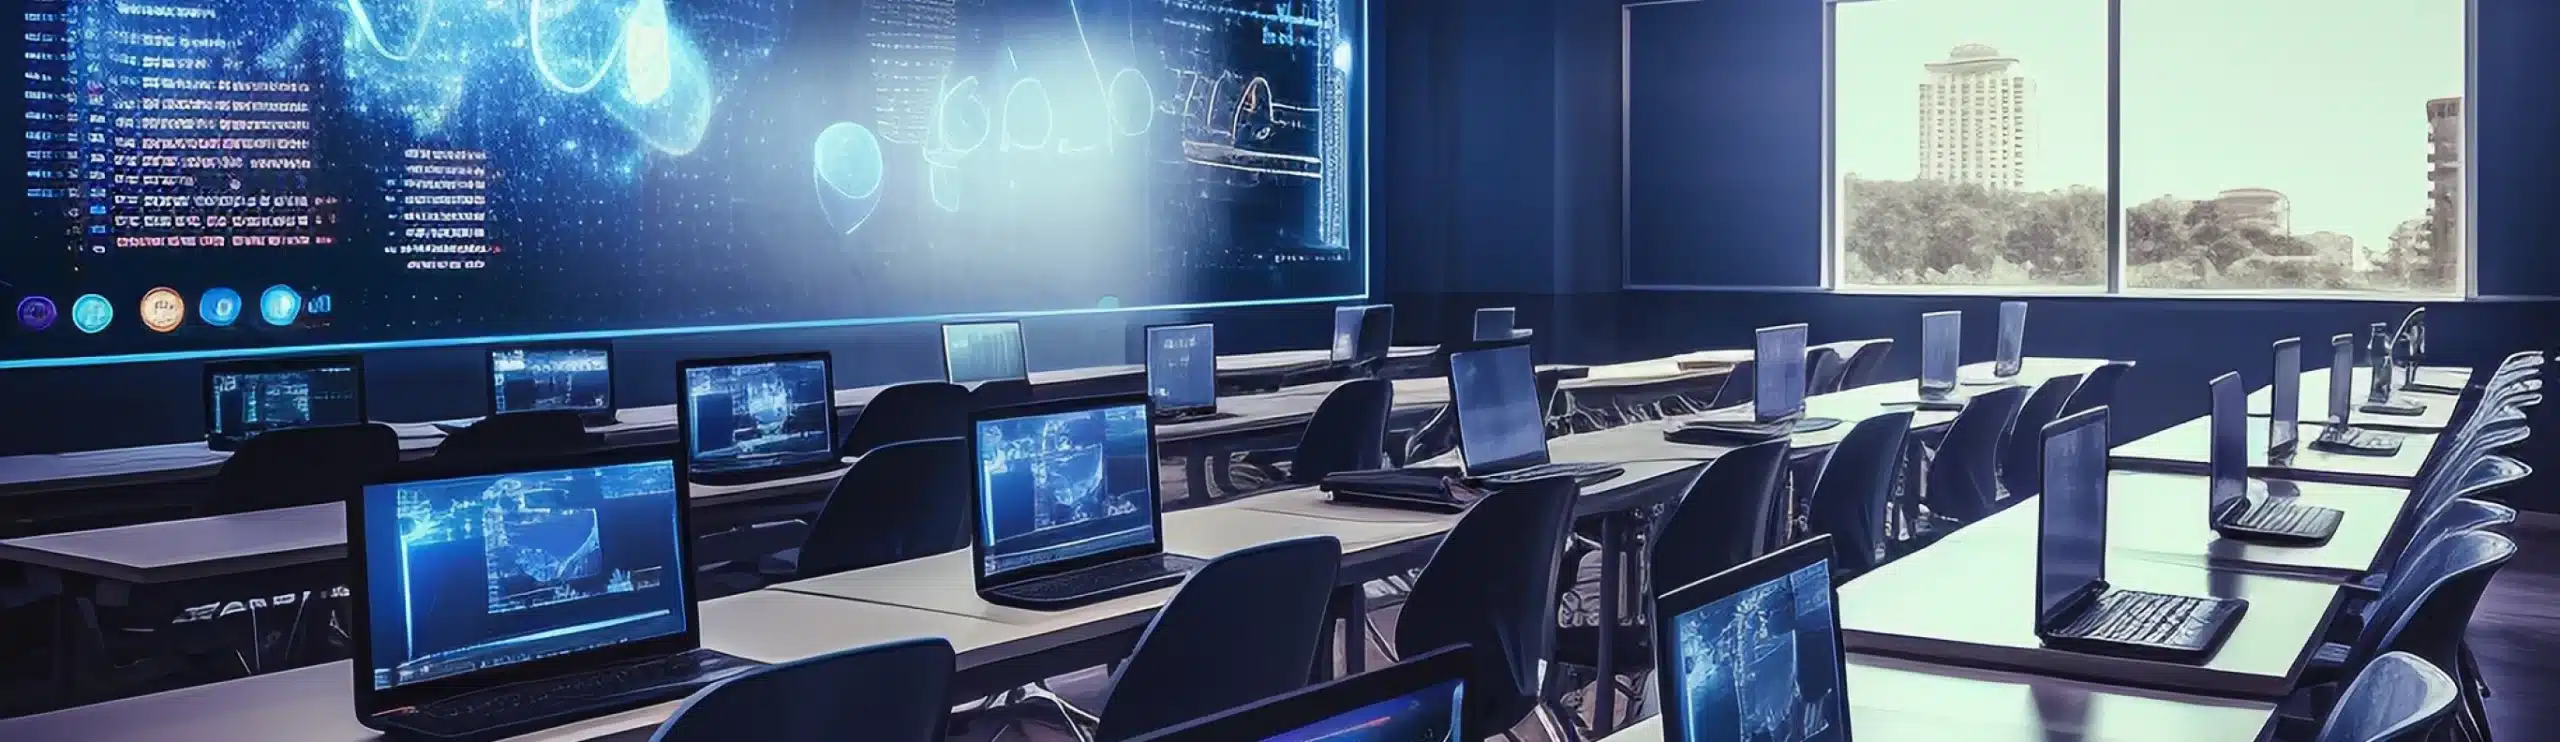 Imagem de uma sala repleta de computadores mostrando dados em suas telas